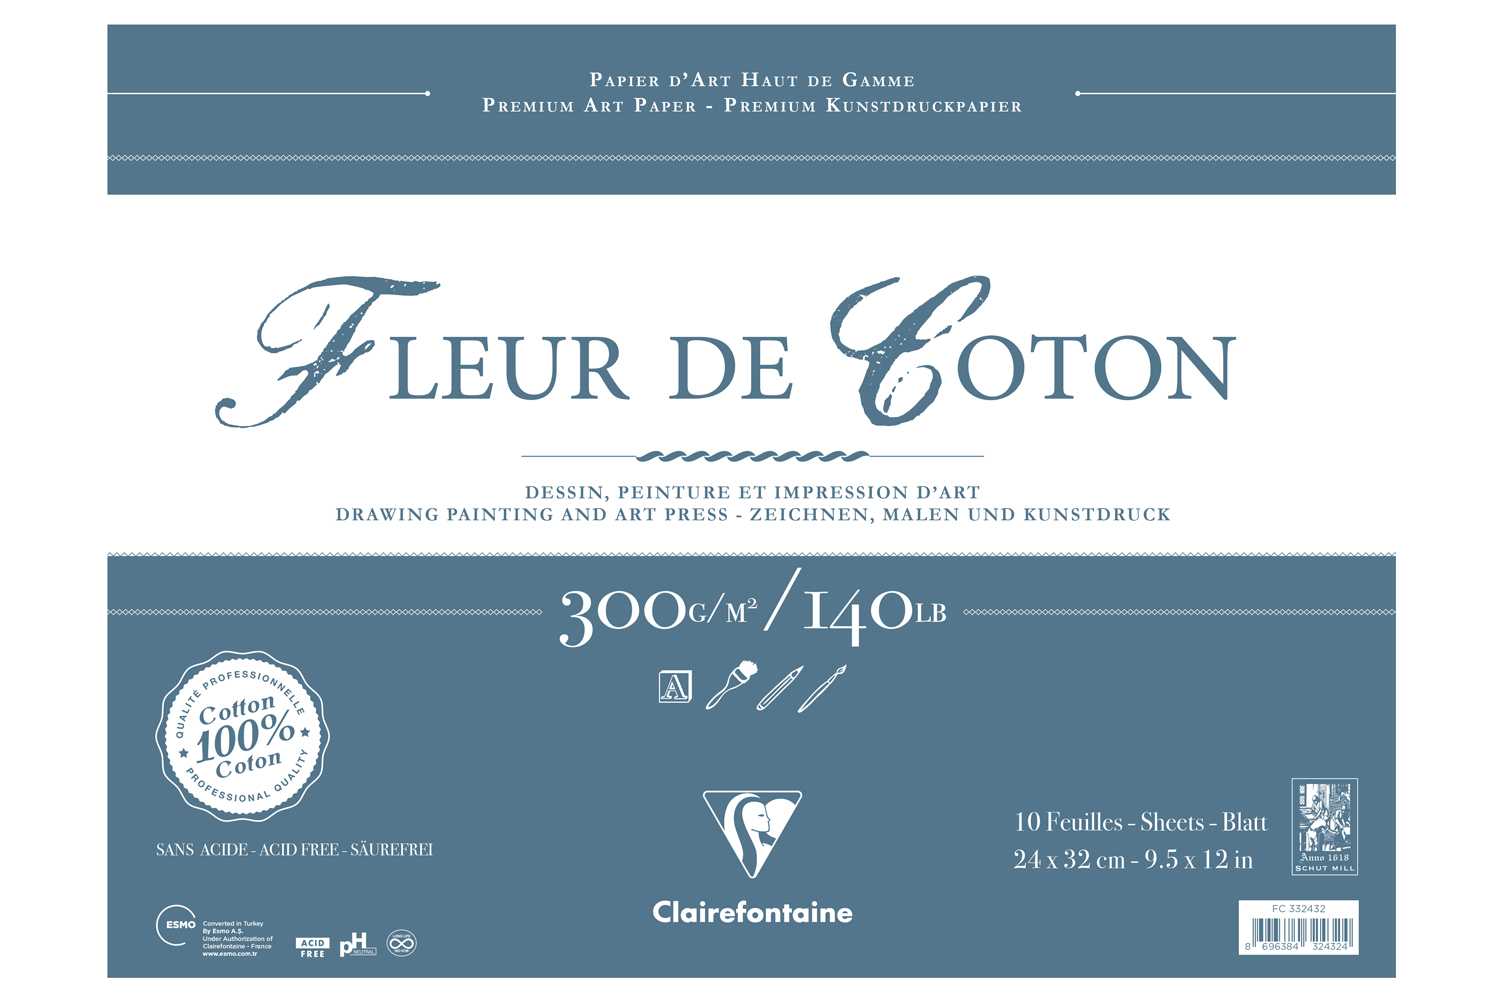 Clairfontaine, Fleur de Coton Uzun Kenarı Yapışkanlı - Yeni (10 yaprak, 24x32 cm)